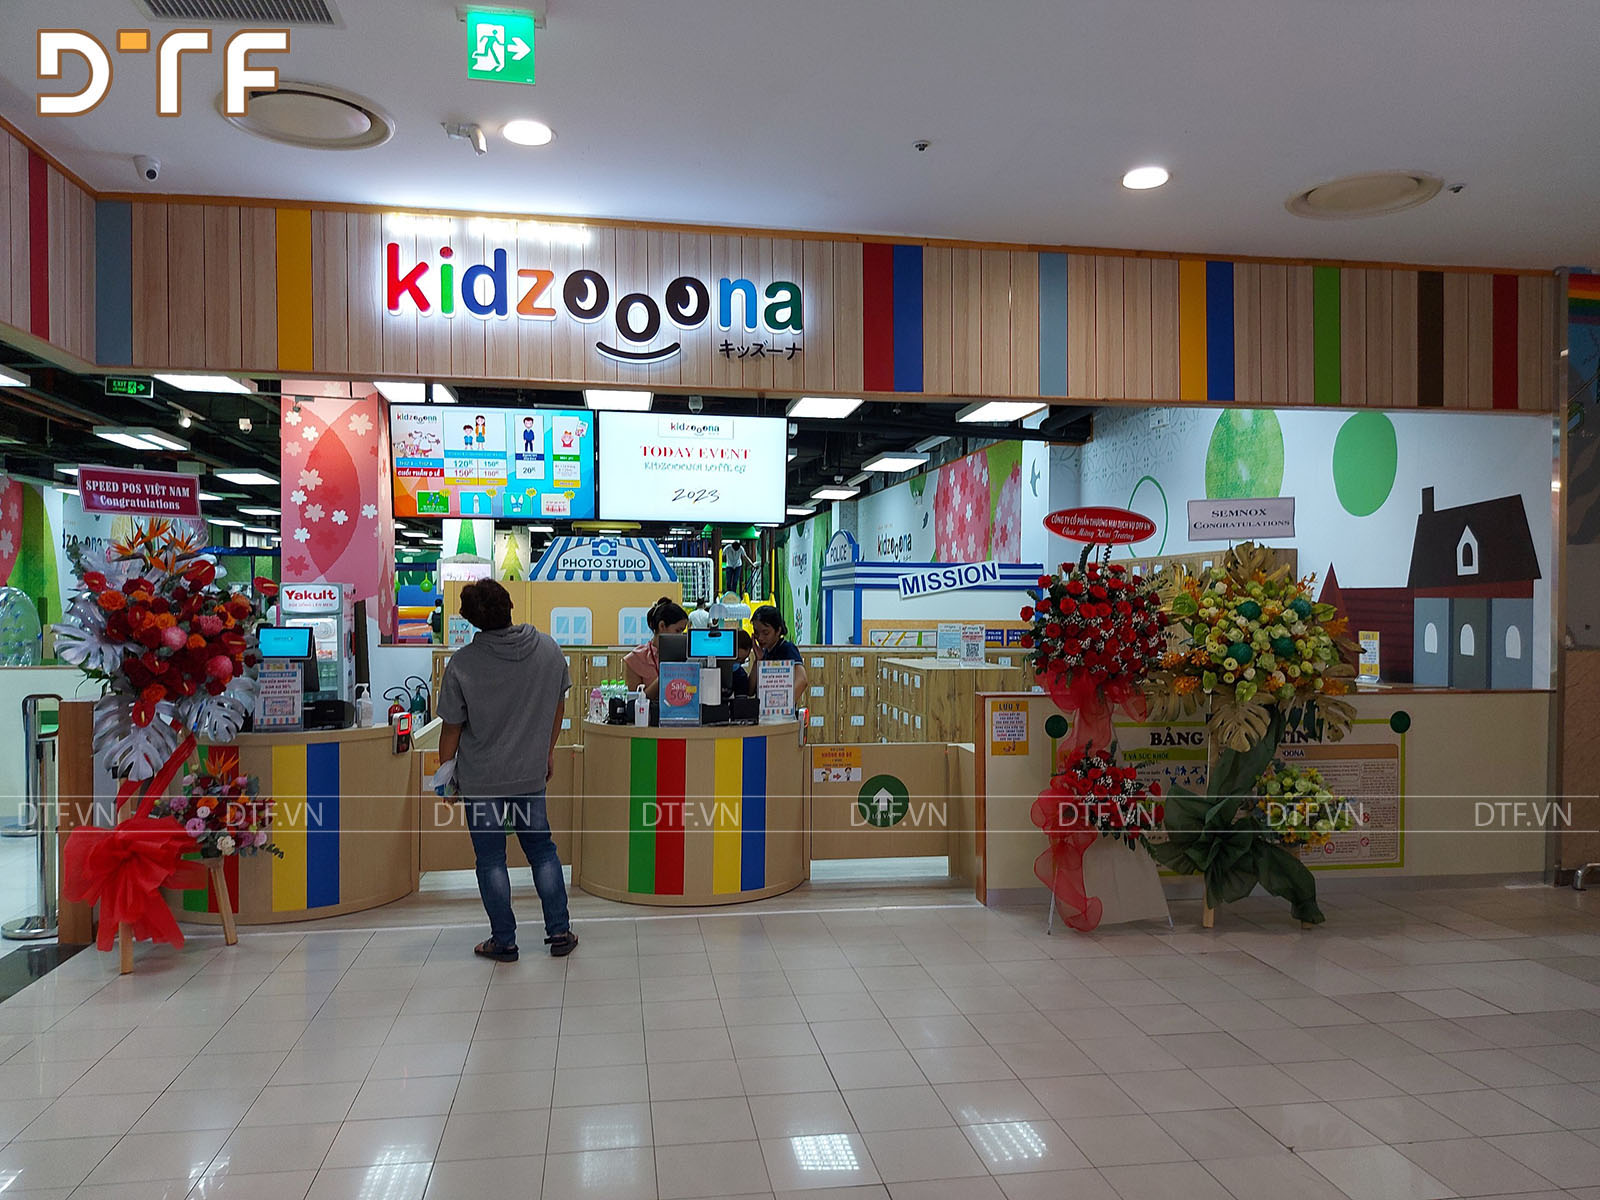 Thi công khu vui chơi trẻ em kidzooona tại Lotte Mart Hồ Chí Minh